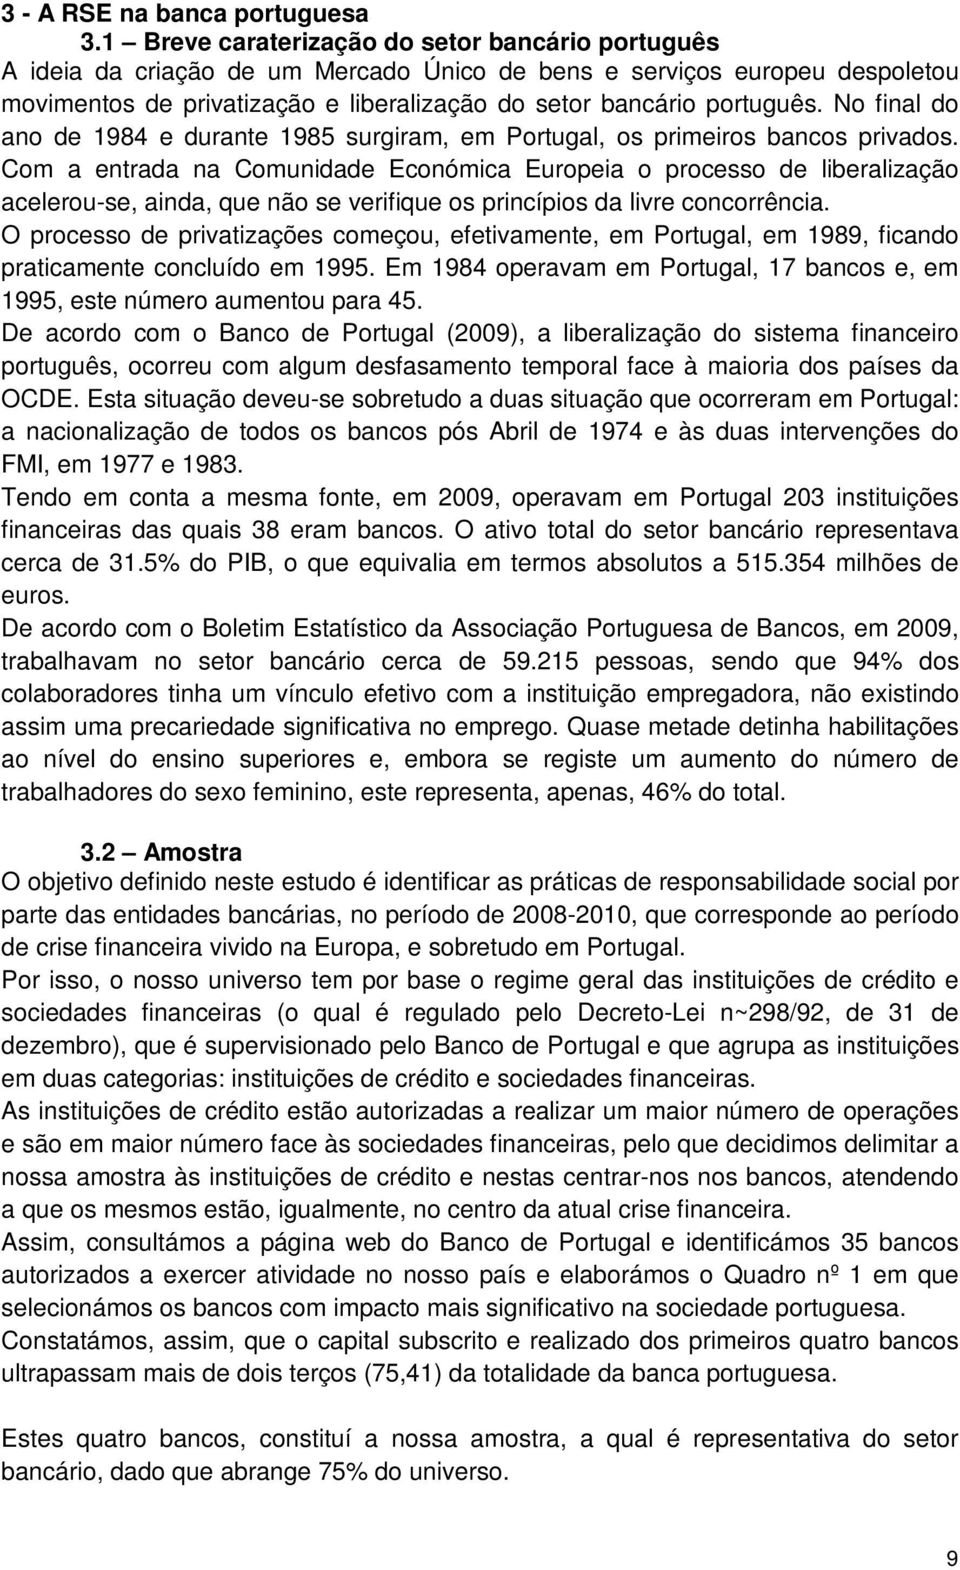 No final do ano de 1984 e durante 1985 surgiram, em Portugal, os primeiros bancos privados.